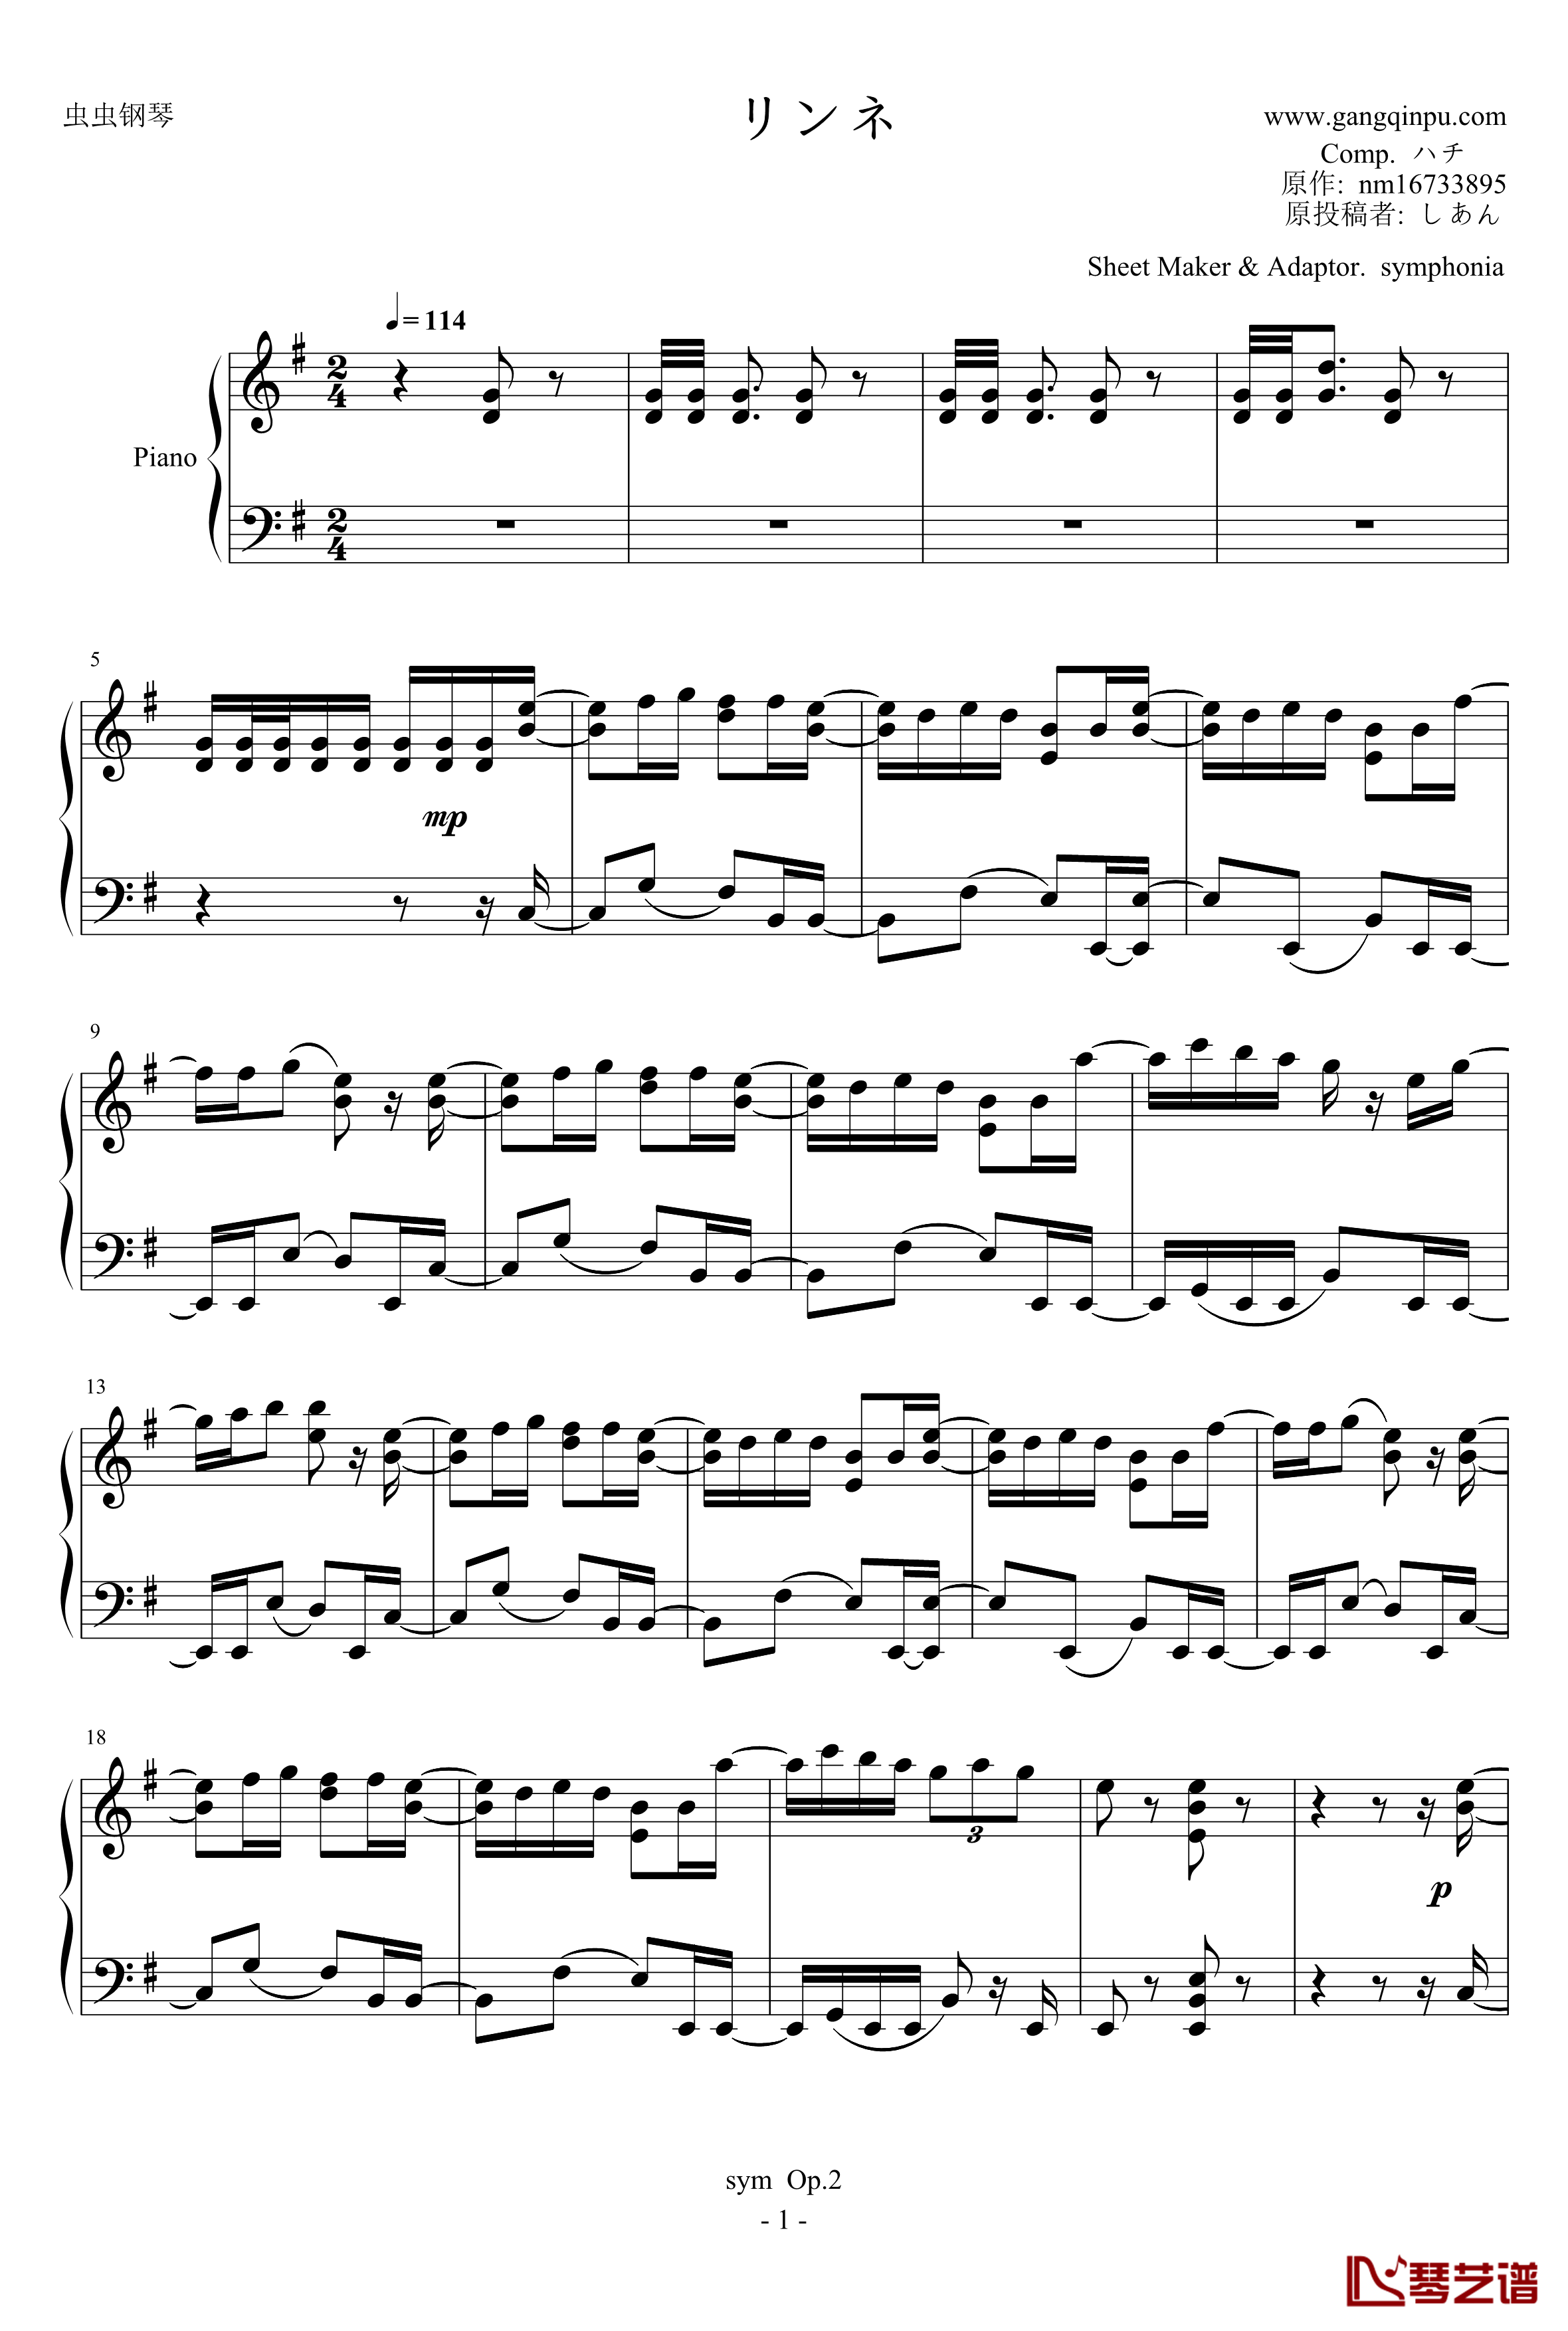 リンネ钢琴谱-piano ver. 改-初音ミク-初音未来1